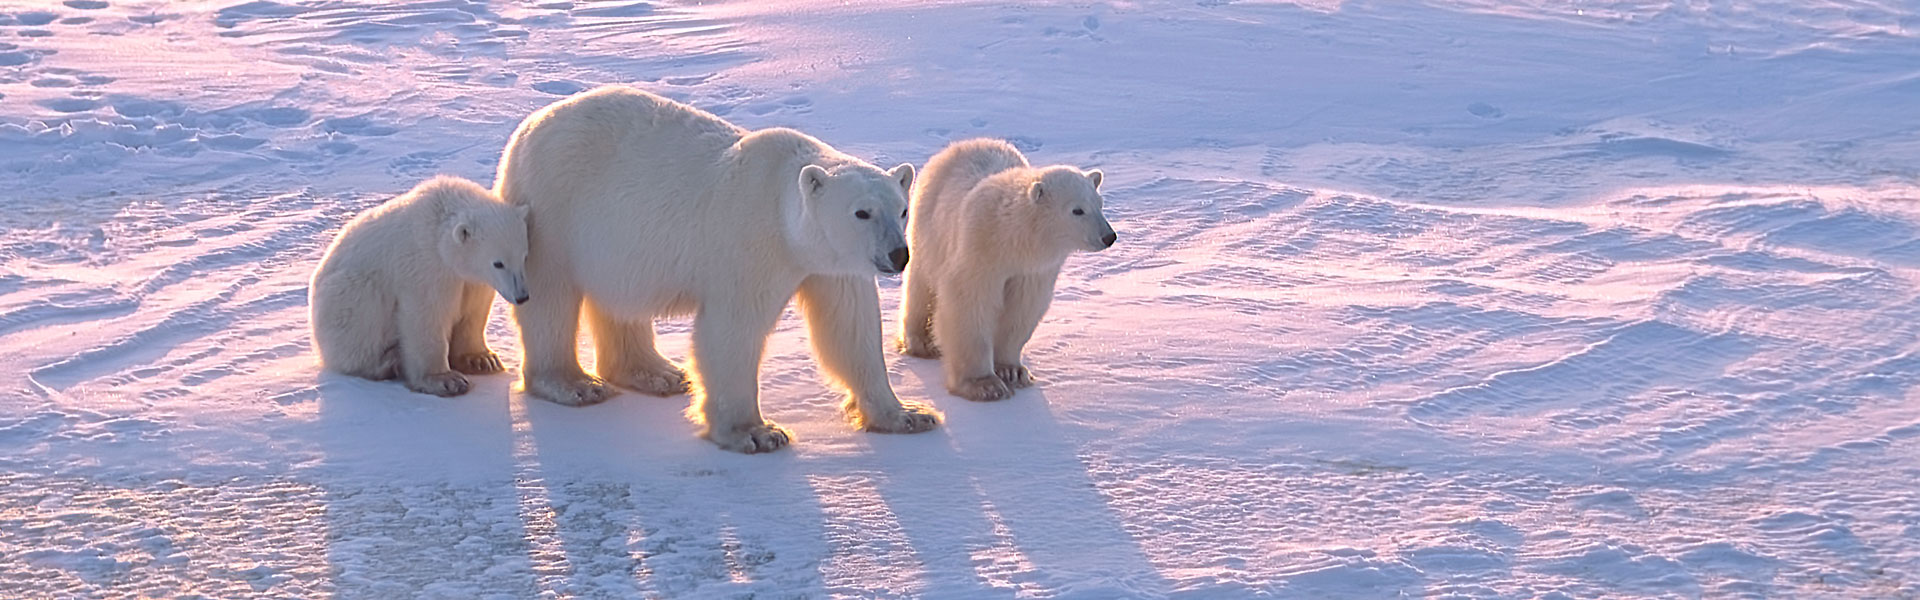 Polar Bear Tours to Churchill, Manitoba | Trip of a lifetime